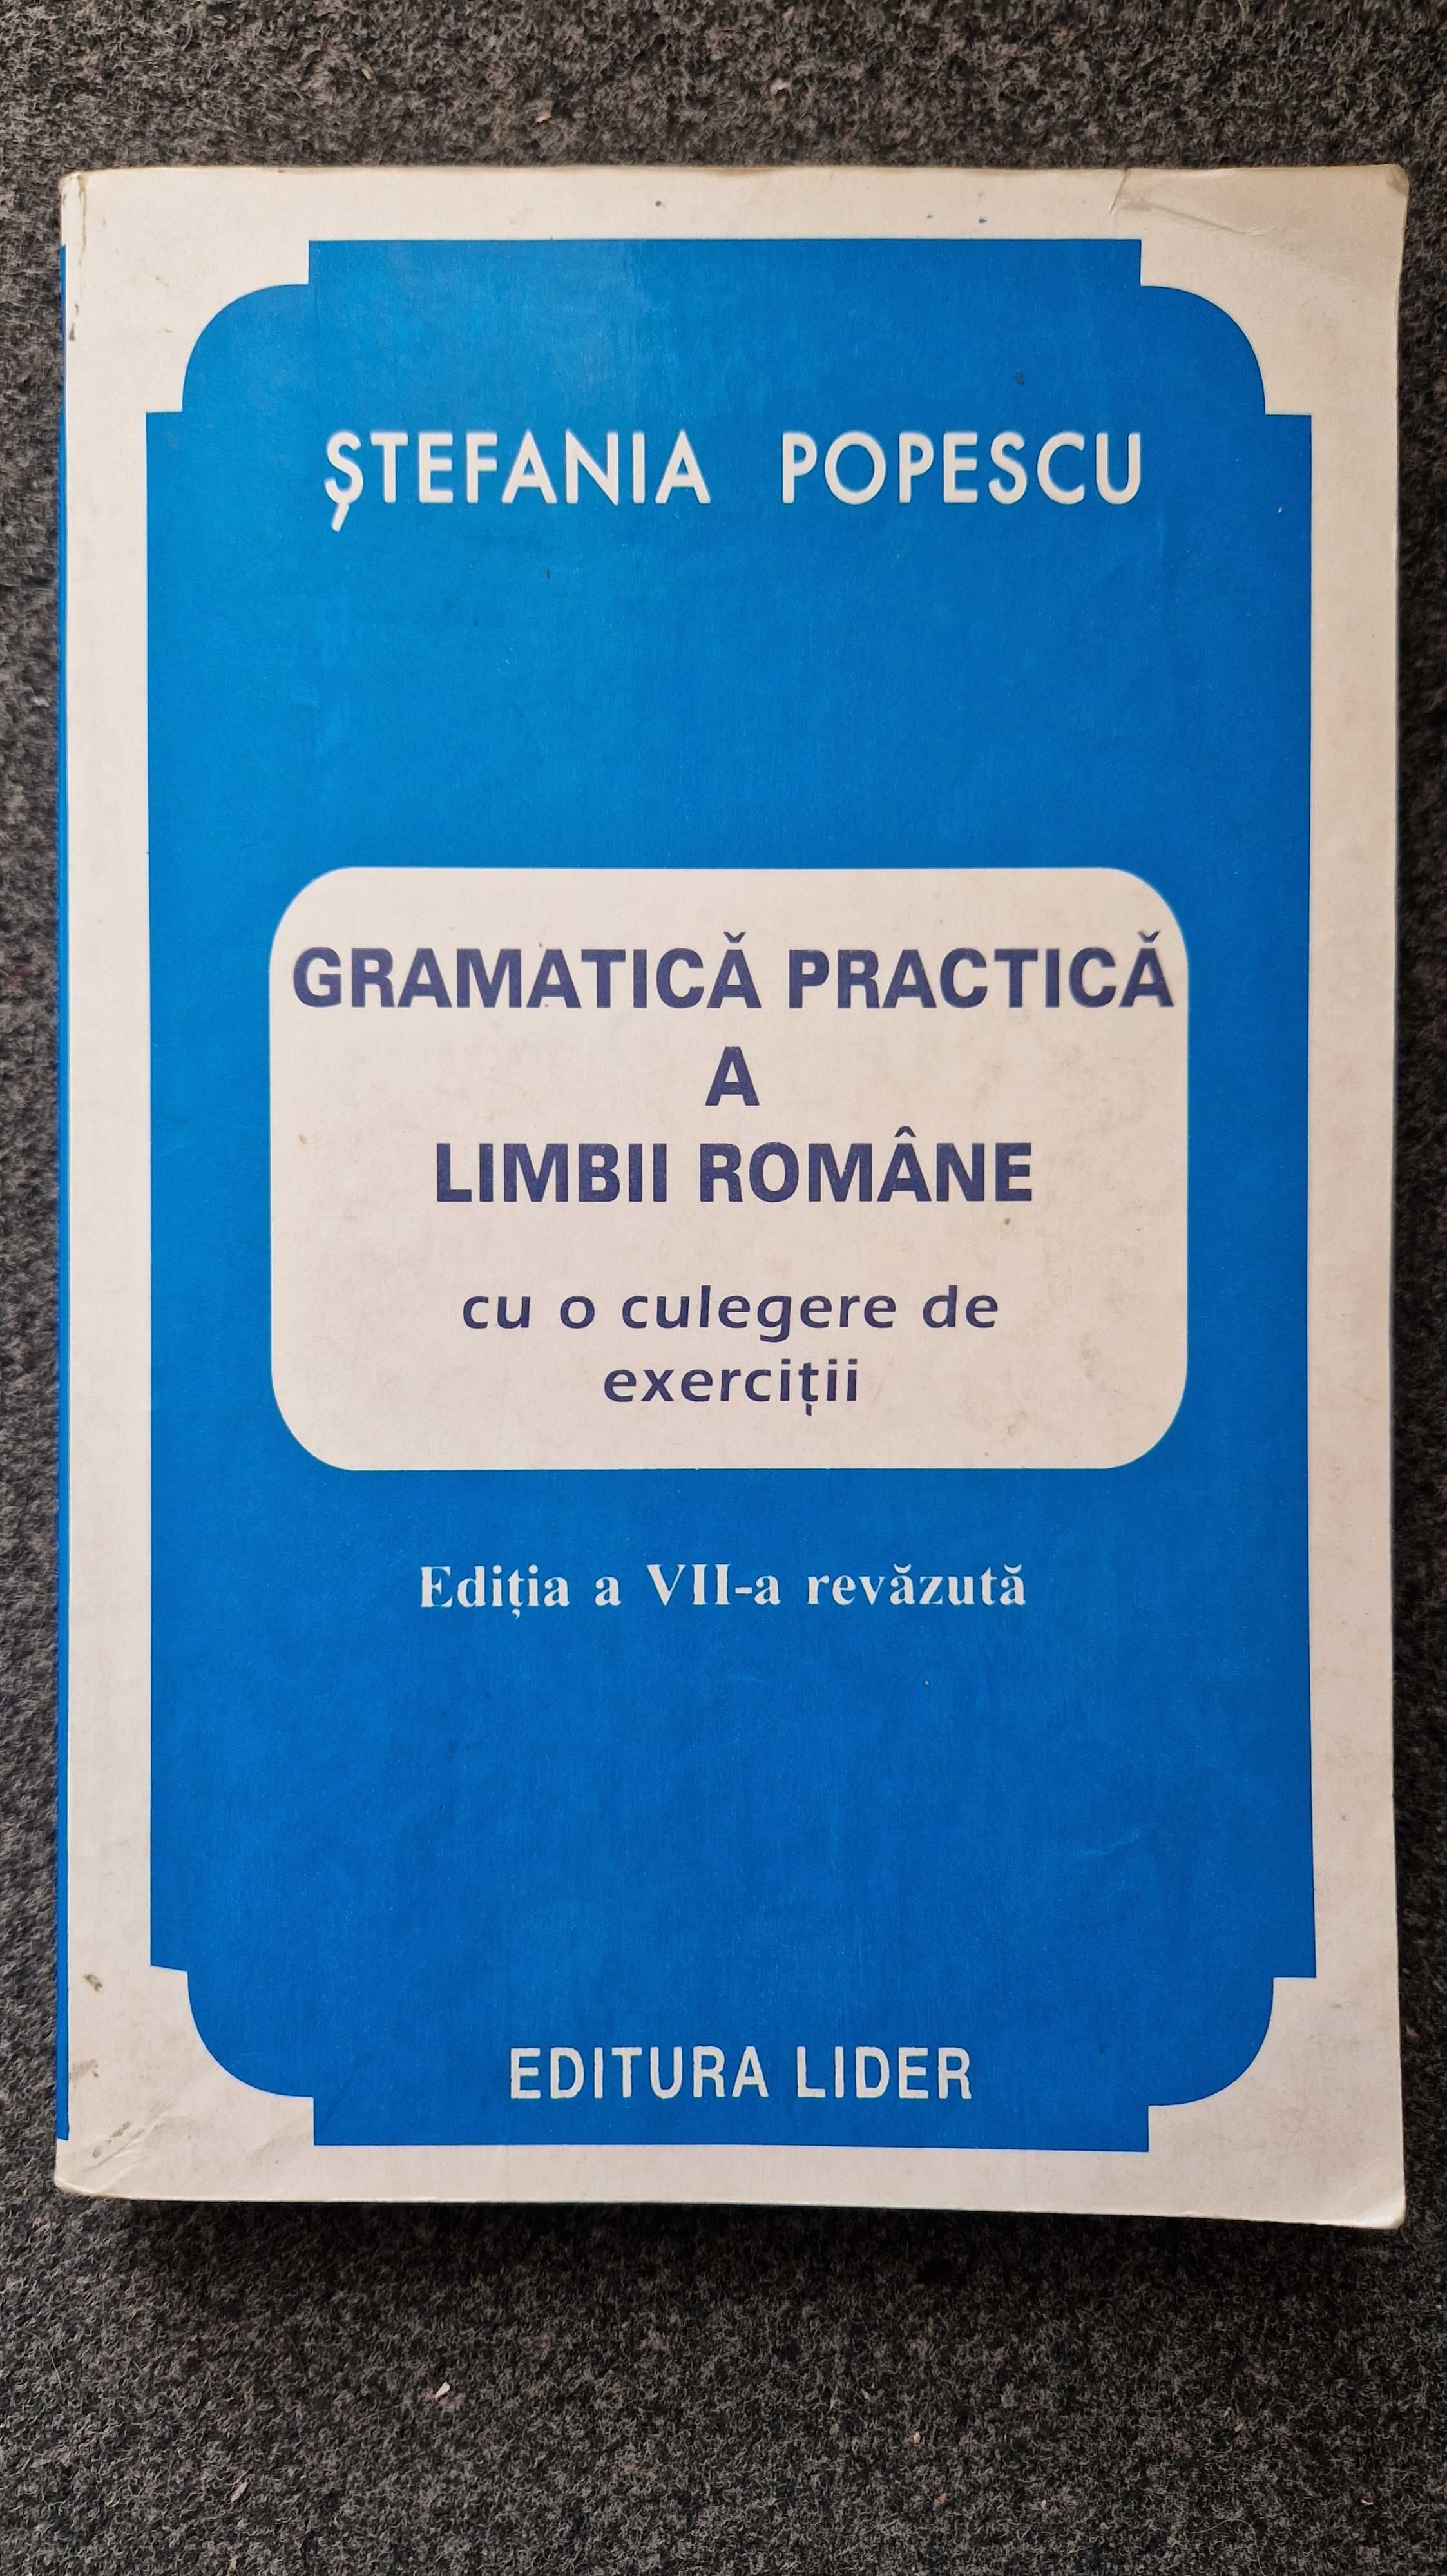 GRAMATICA PRACTICA a LIMBII ROMANE - Stefania Popescu (ed Orizonturi)